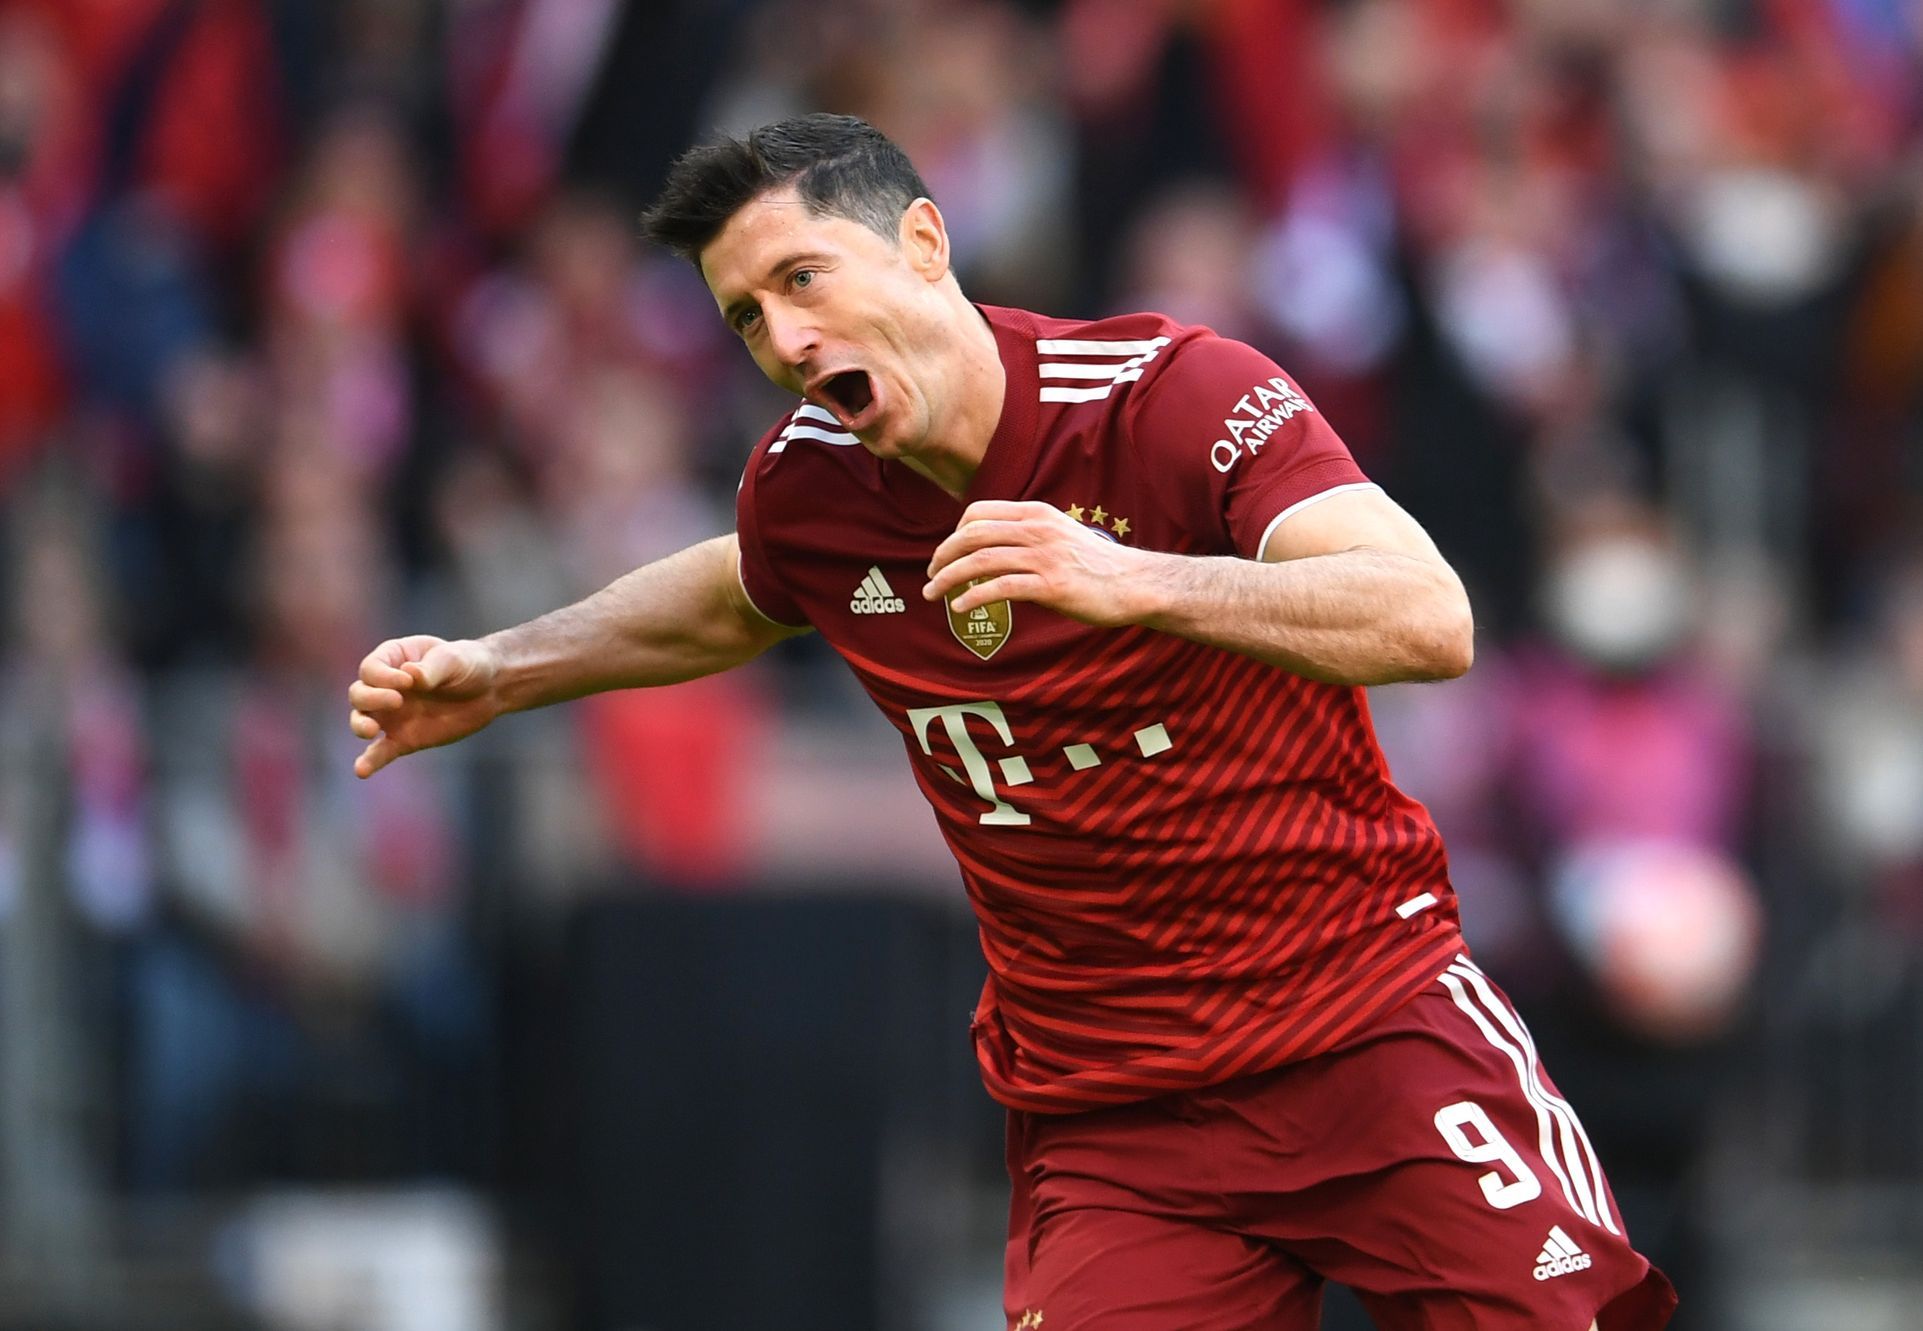 Grausamer FC Bayern hat einen weiteren Gegner ausgelöscht, Leipzig zeigte eine atemberaubende Wendung